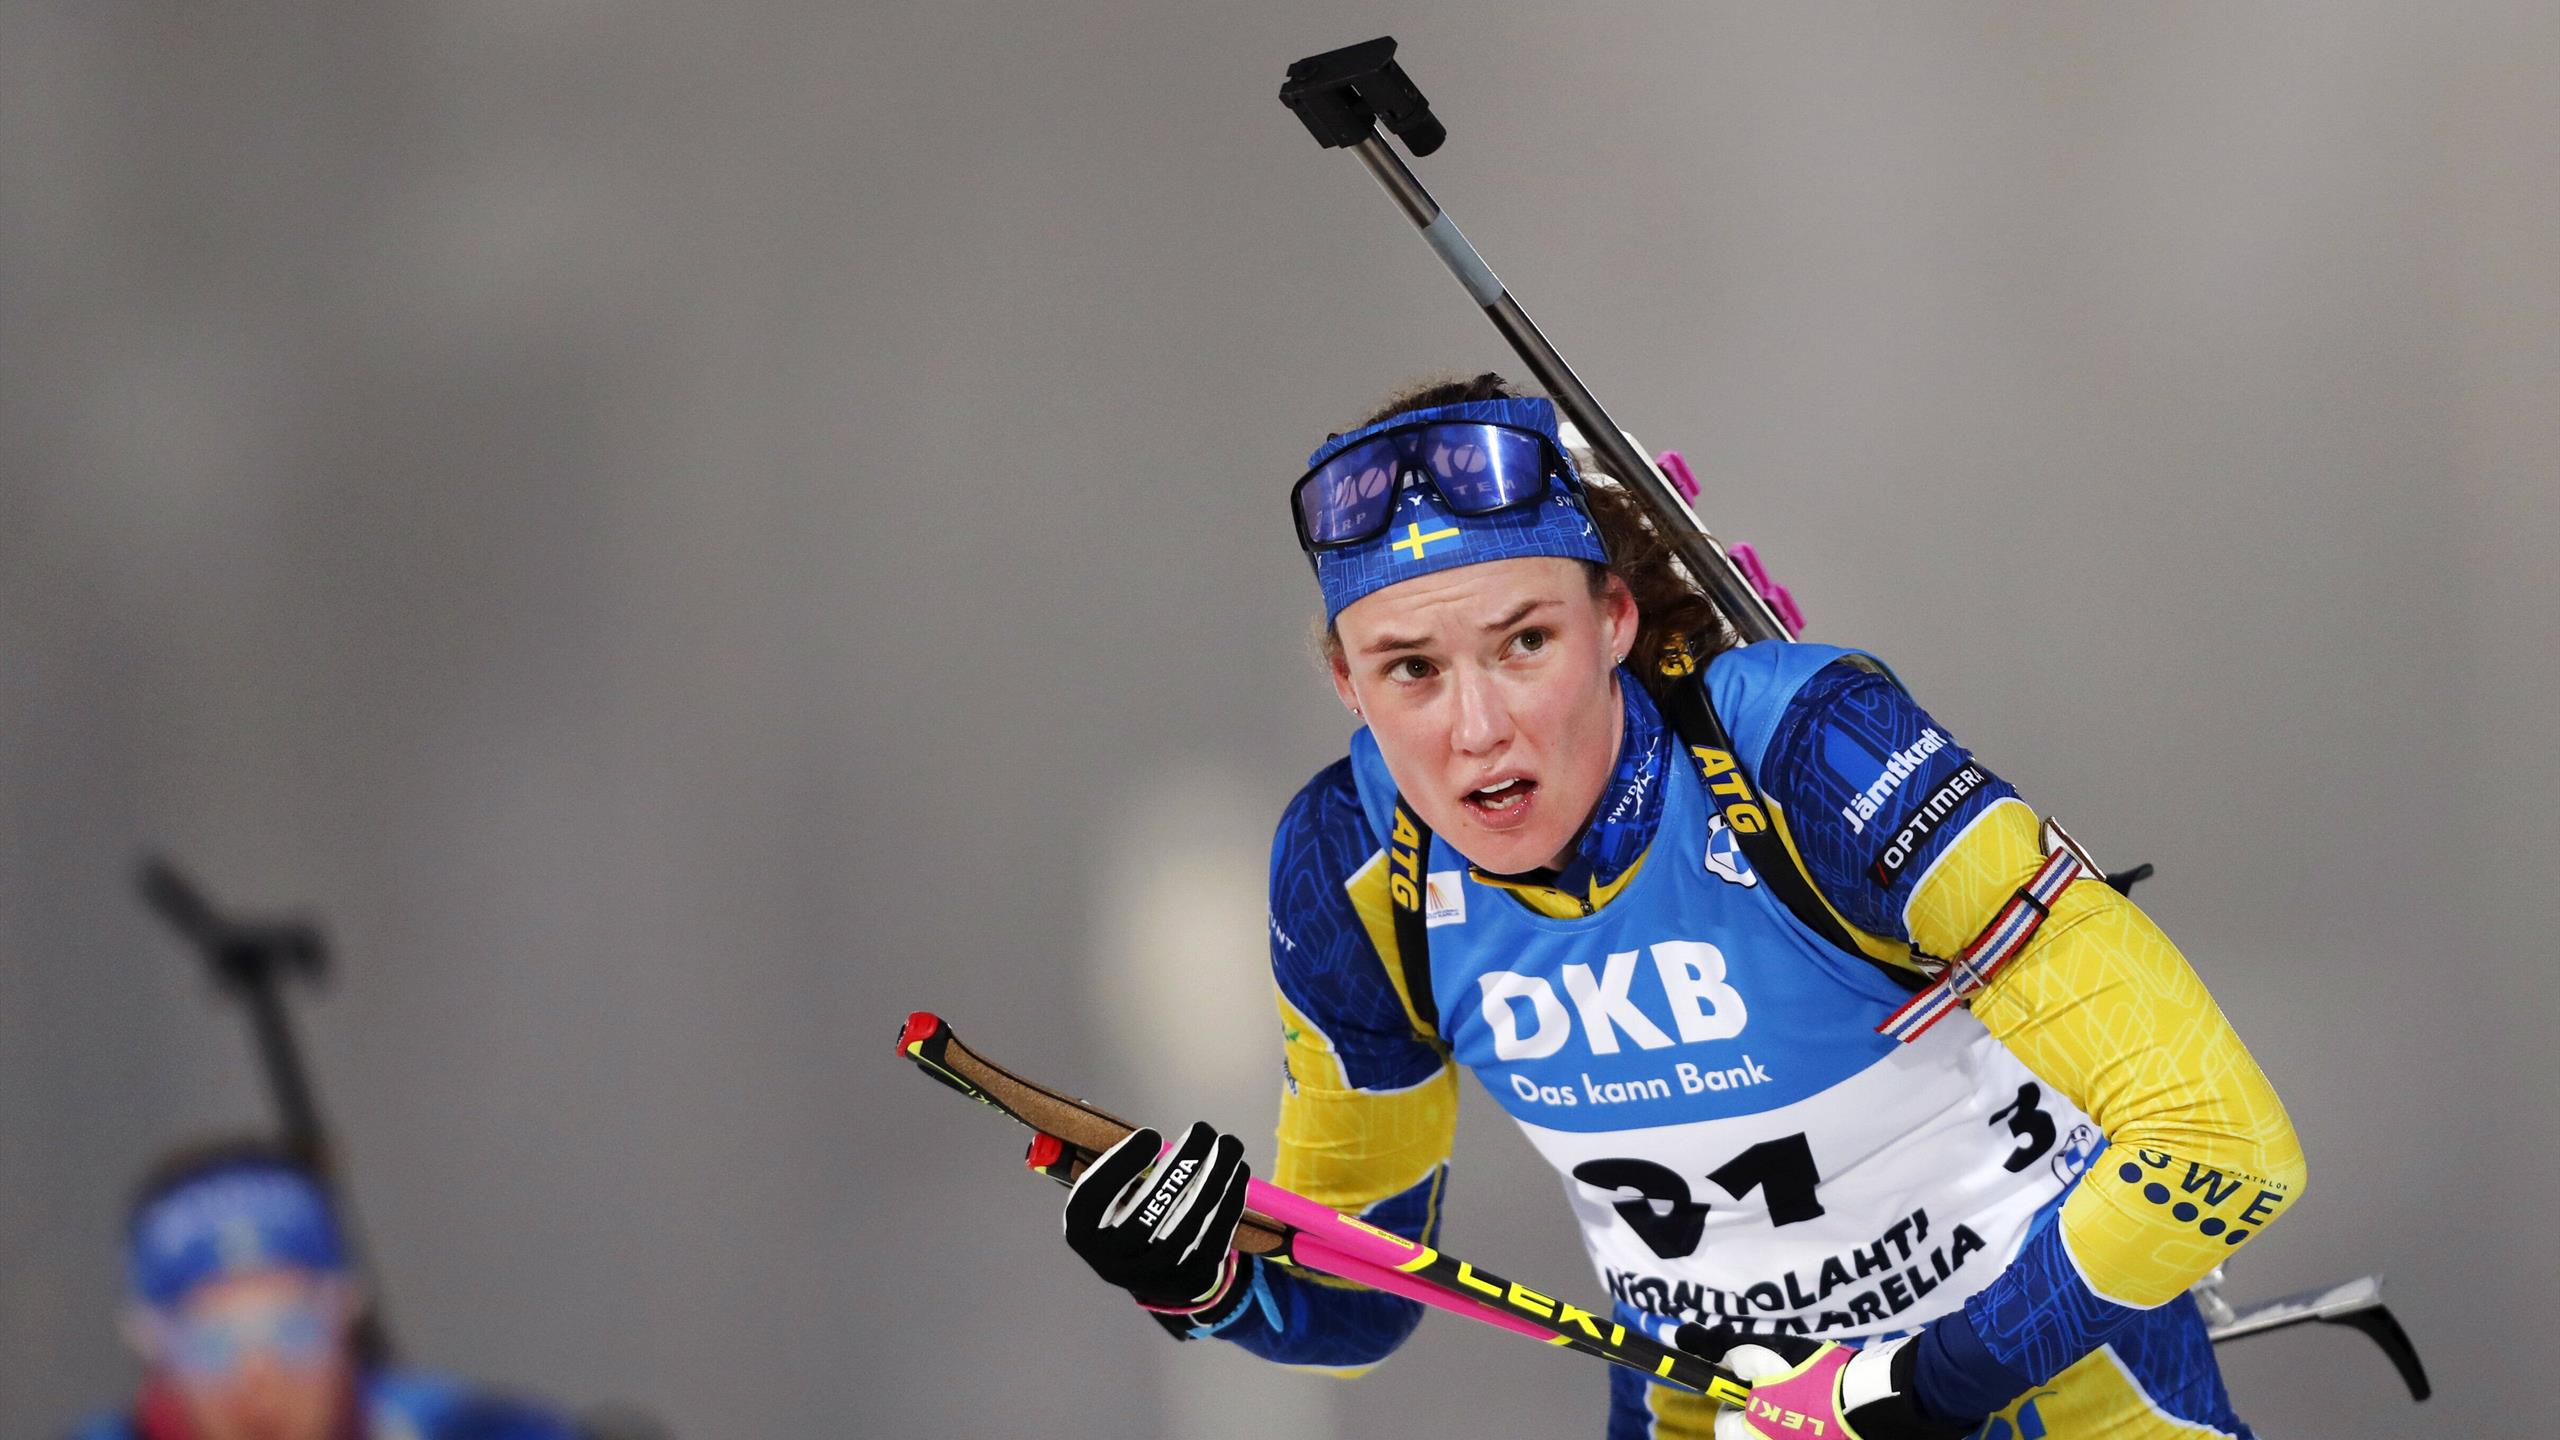 La classifica generale femminile: Hanna Öberg parte forte, Vittozzi c'è